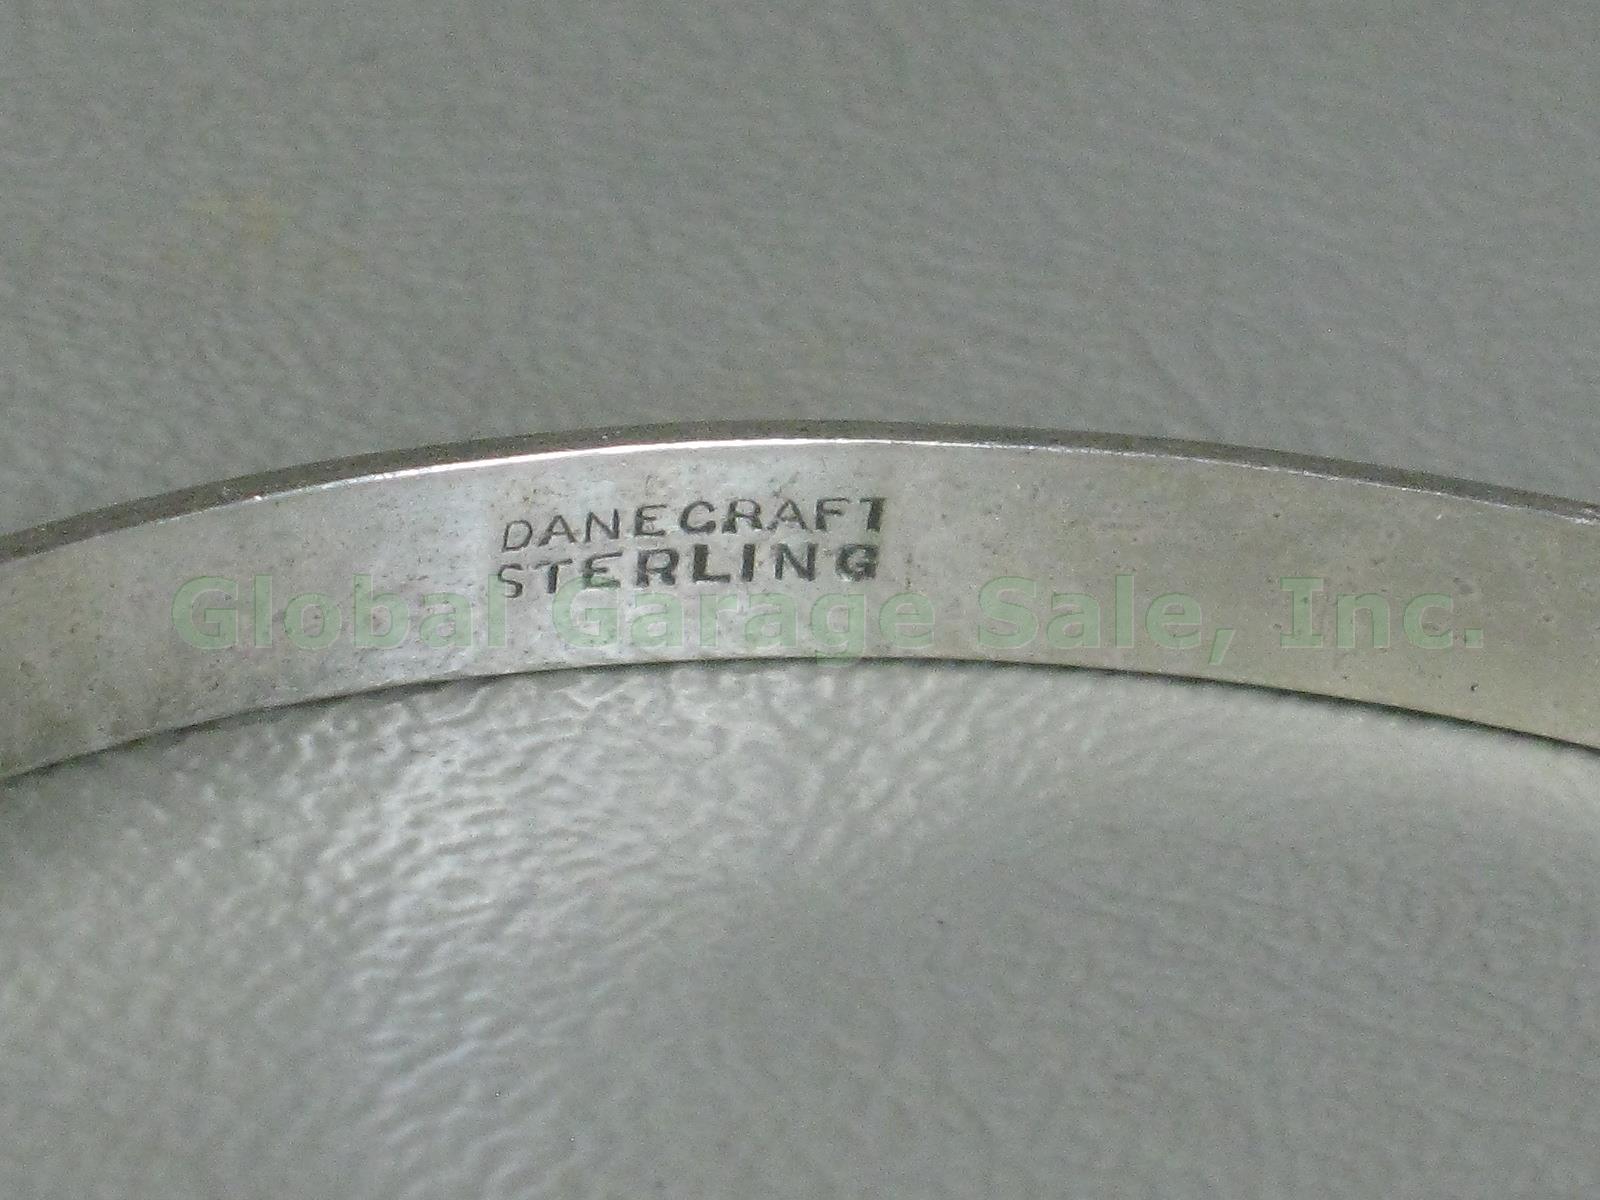 4 Vtg Danecraft Sterling Silver Bangle Bracelet Lot Greek Key Floral Rolled Edge 4